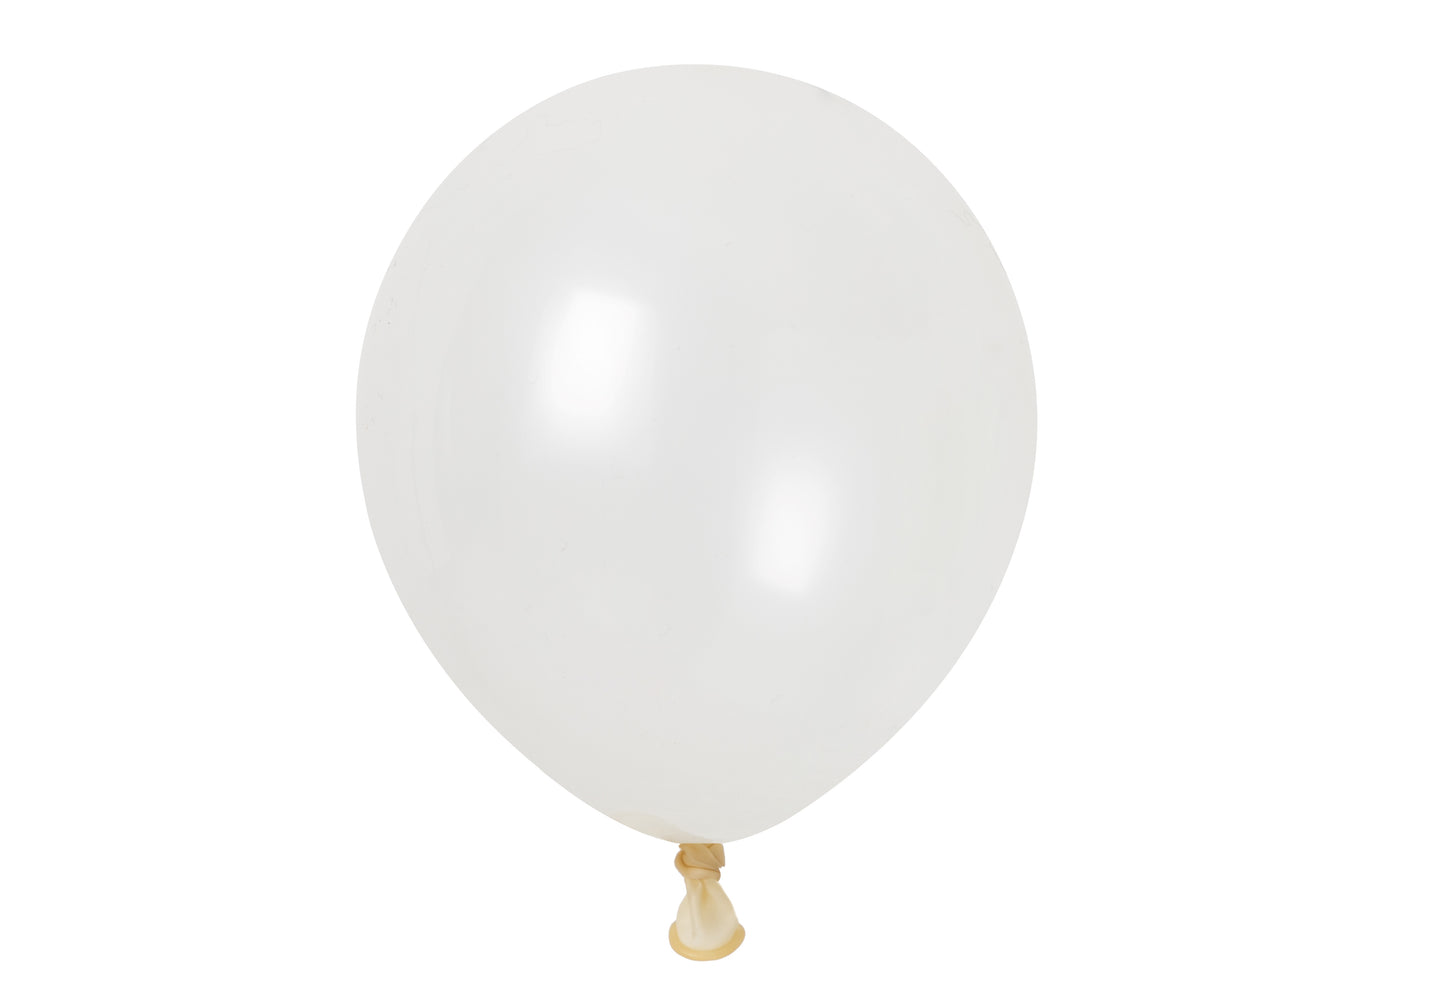 Winntex Premium 12" Clear Latex Balloon